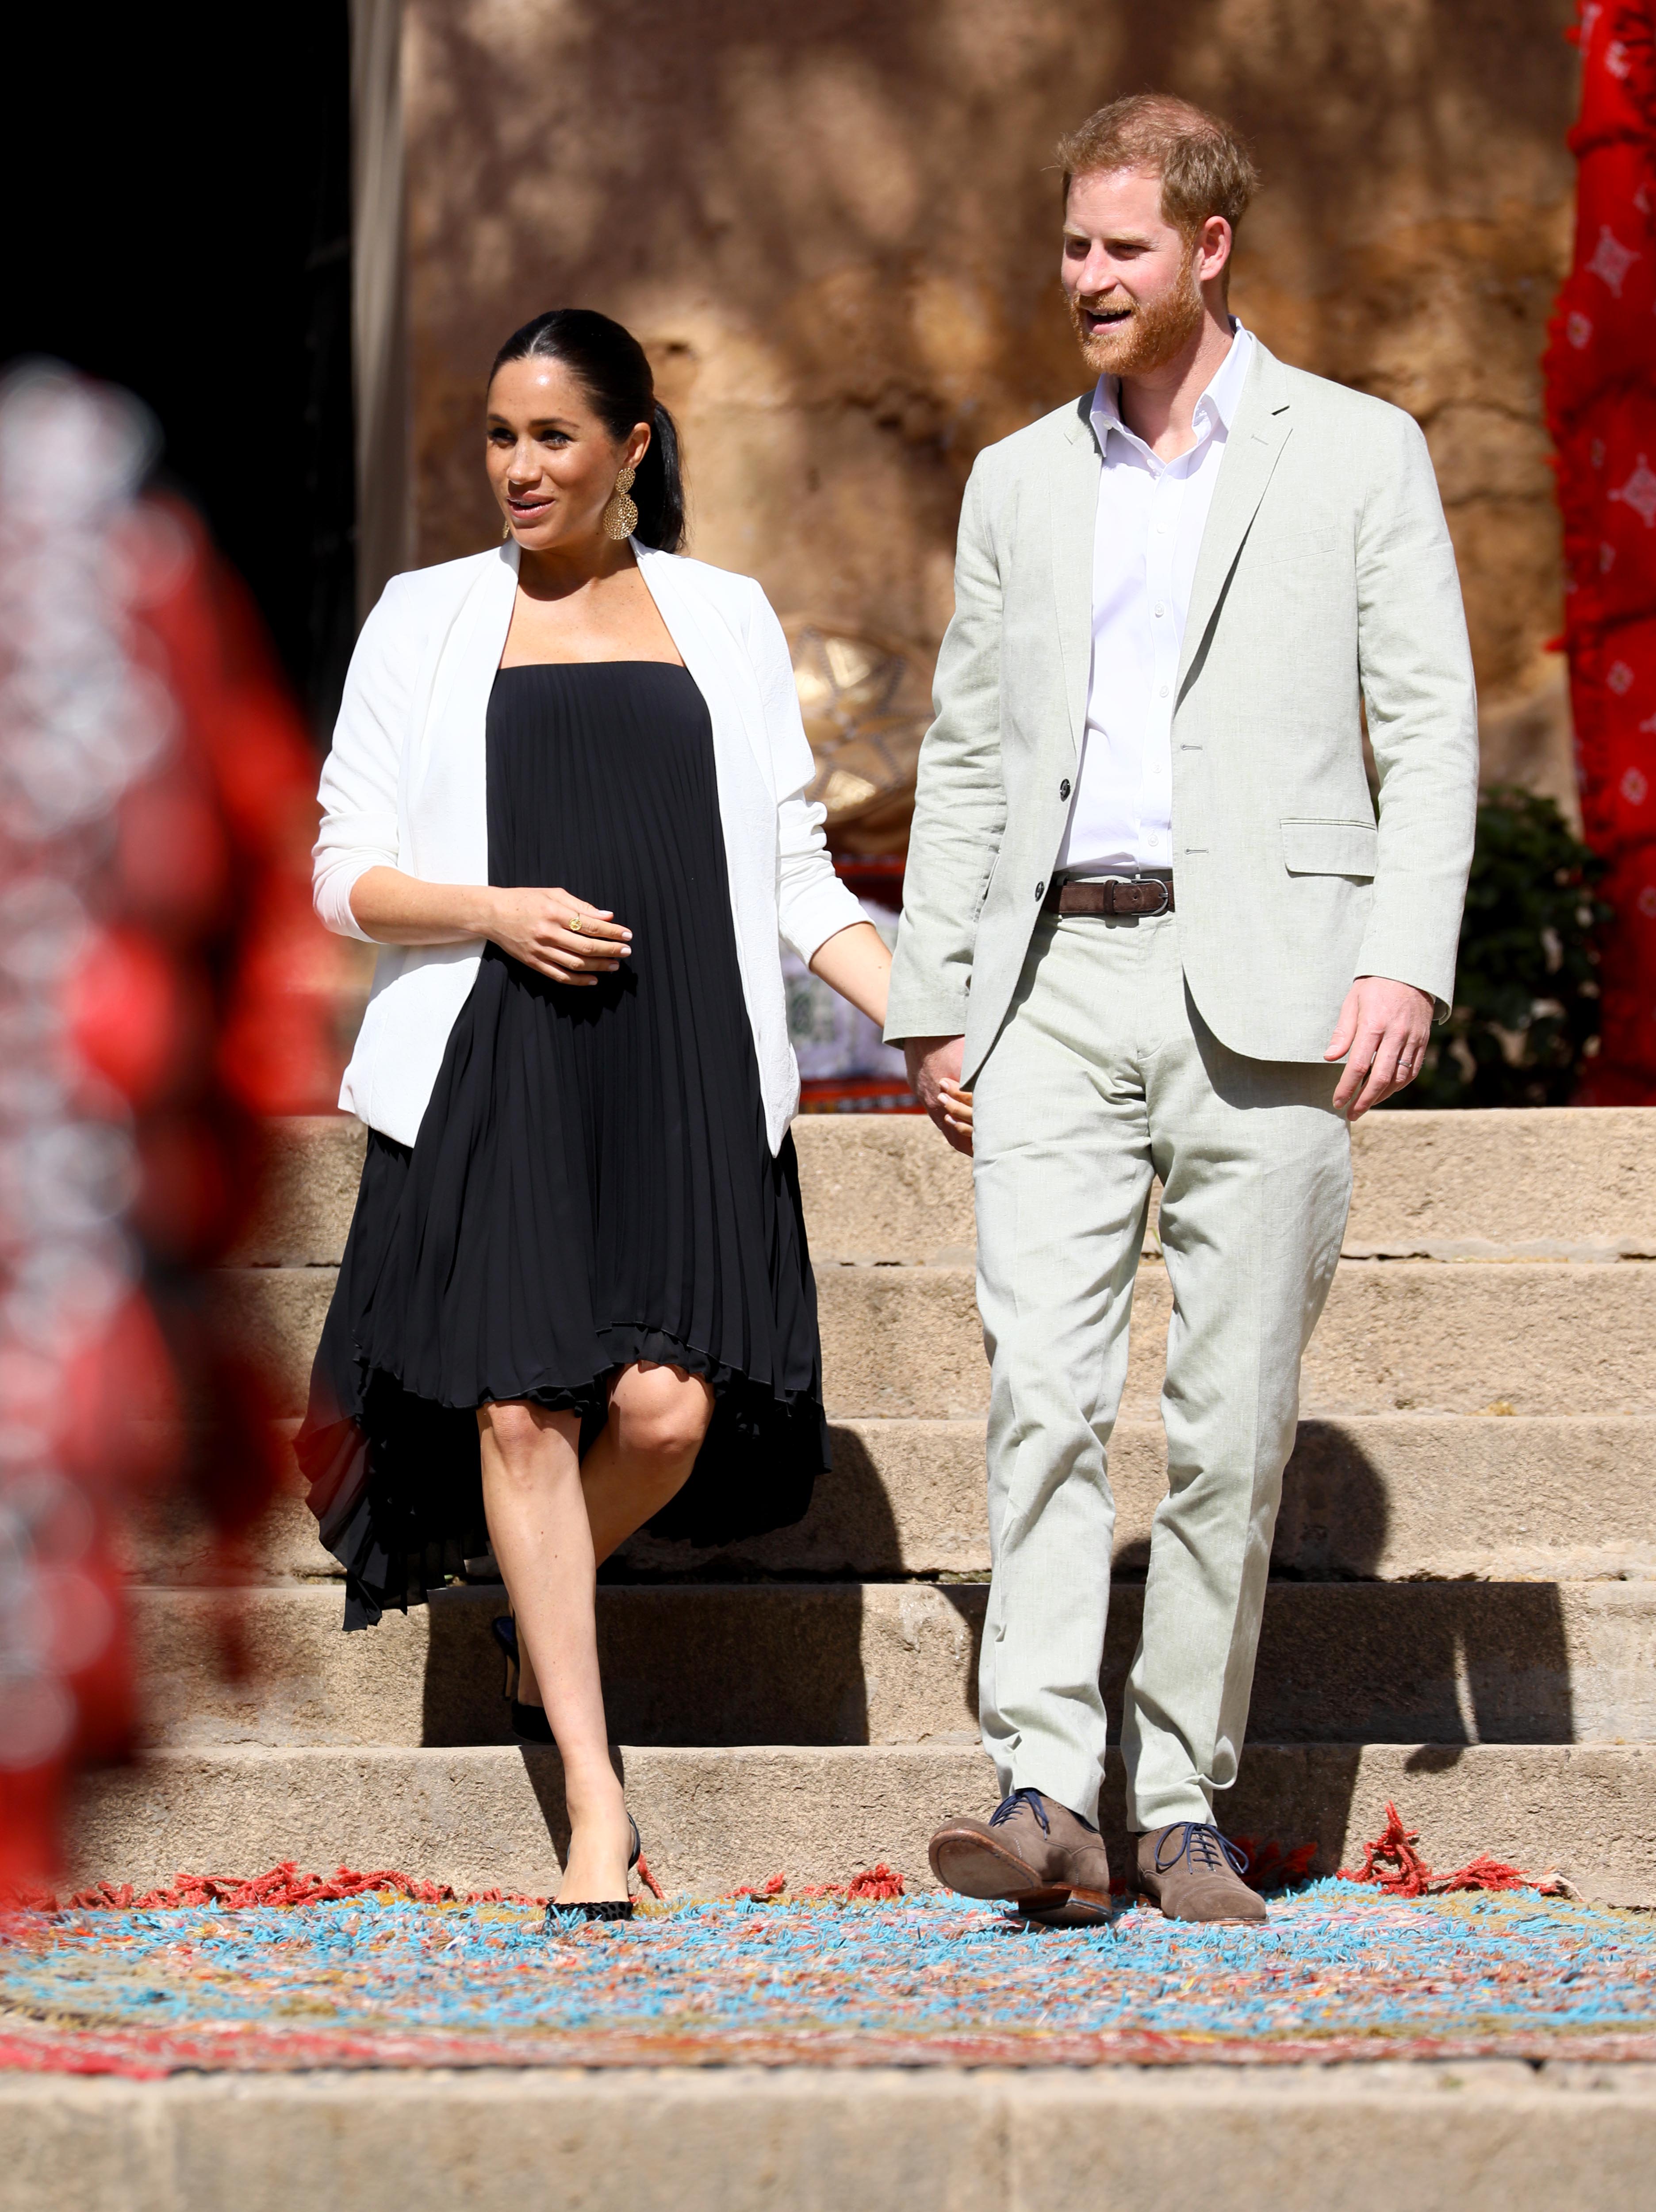  Prinz Harry, Herzog von Sussex, und Meghan, Herzogin von Sussex, spazieren während eines Besuchs am 25. Februar 2019 in Rabat, Marokko, durch die ummauerten öffentlichen Andalusischen Gärten mit ihren exotischen Pflanzen, Blumen und Obstbäumen. | Quelle: Getty Images